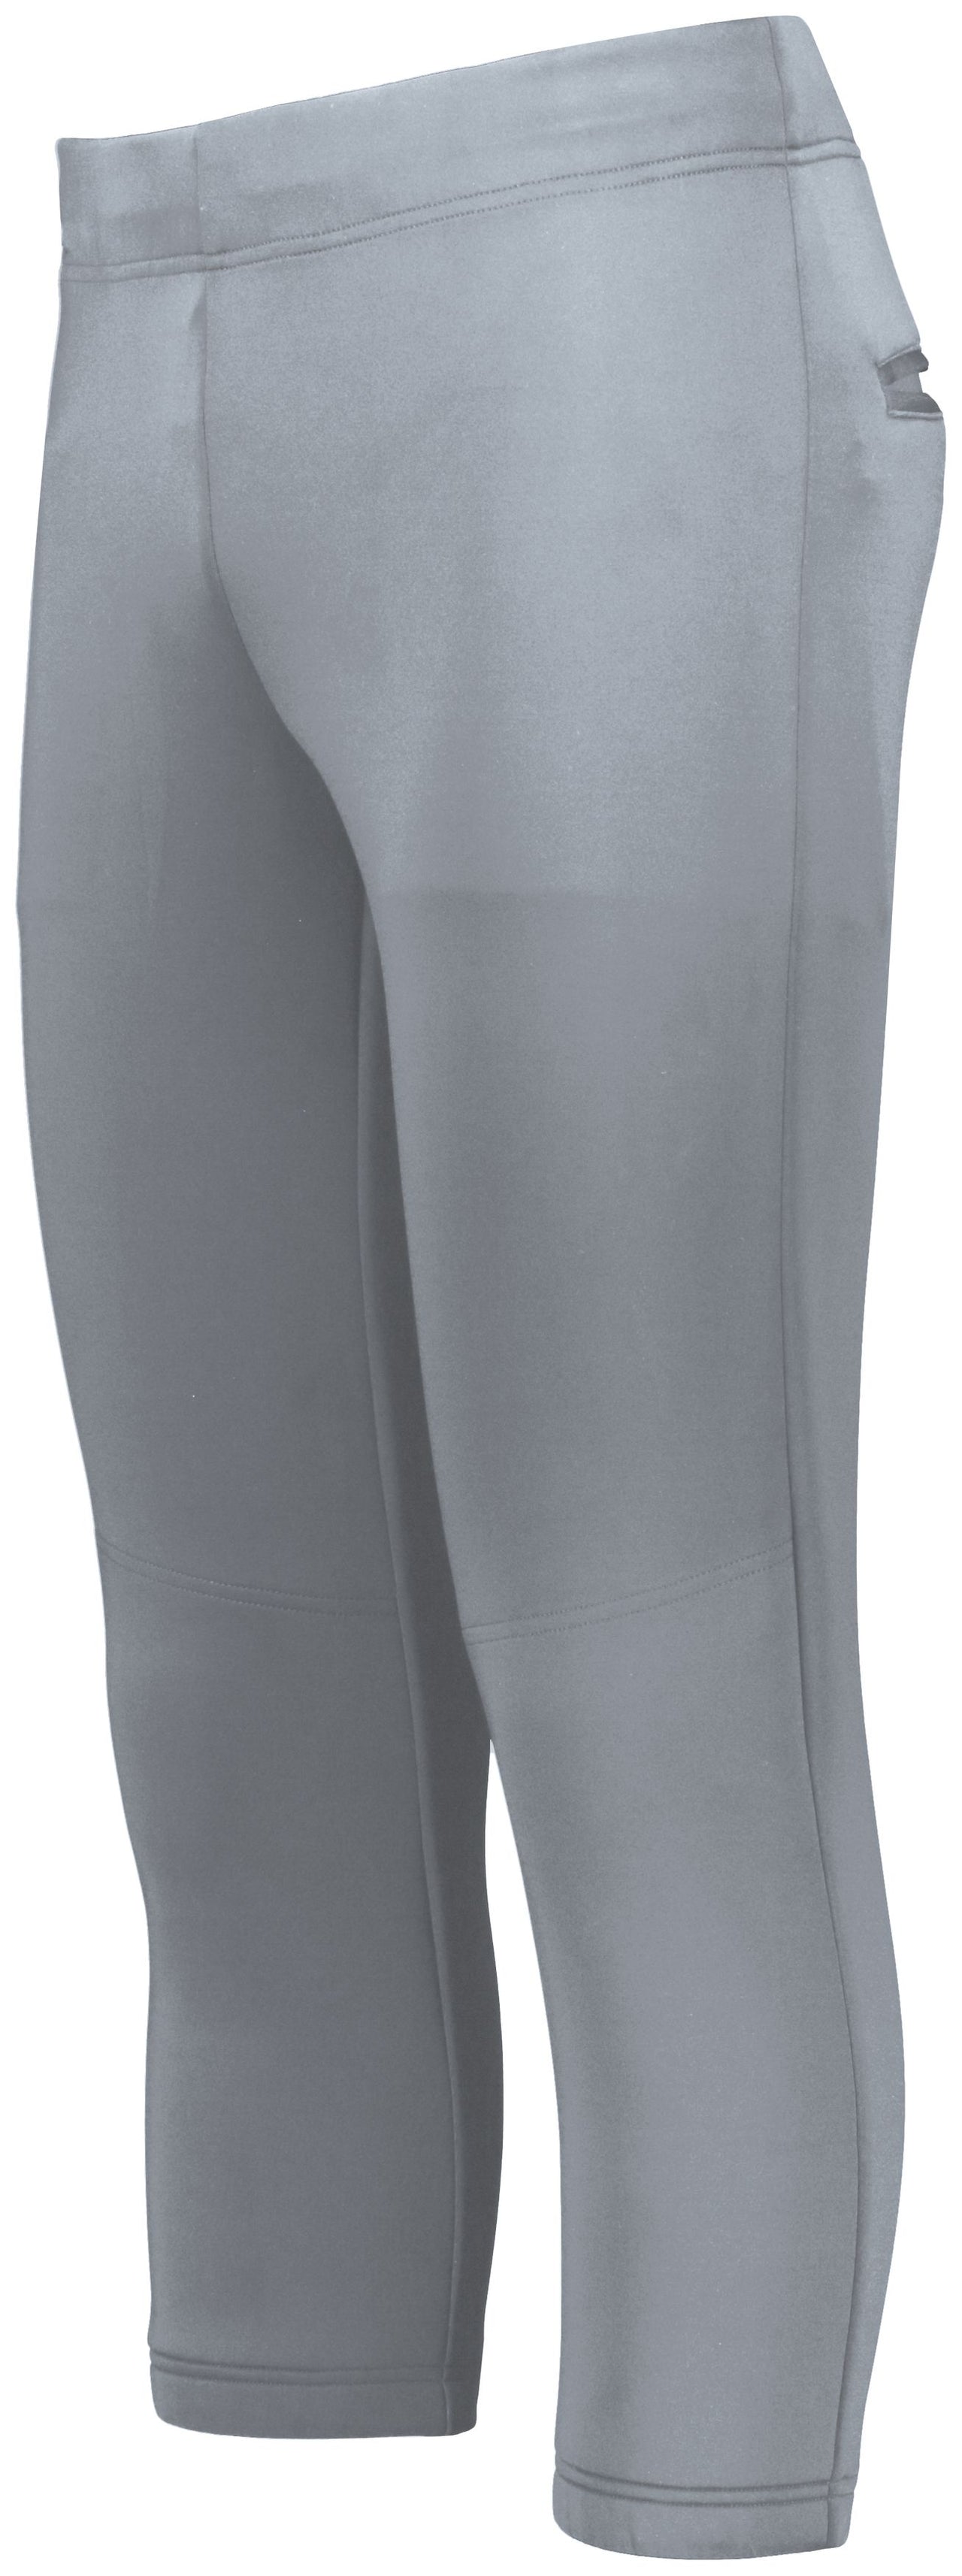 Pantalon de softball Flexstretch pour femme - R15LSX